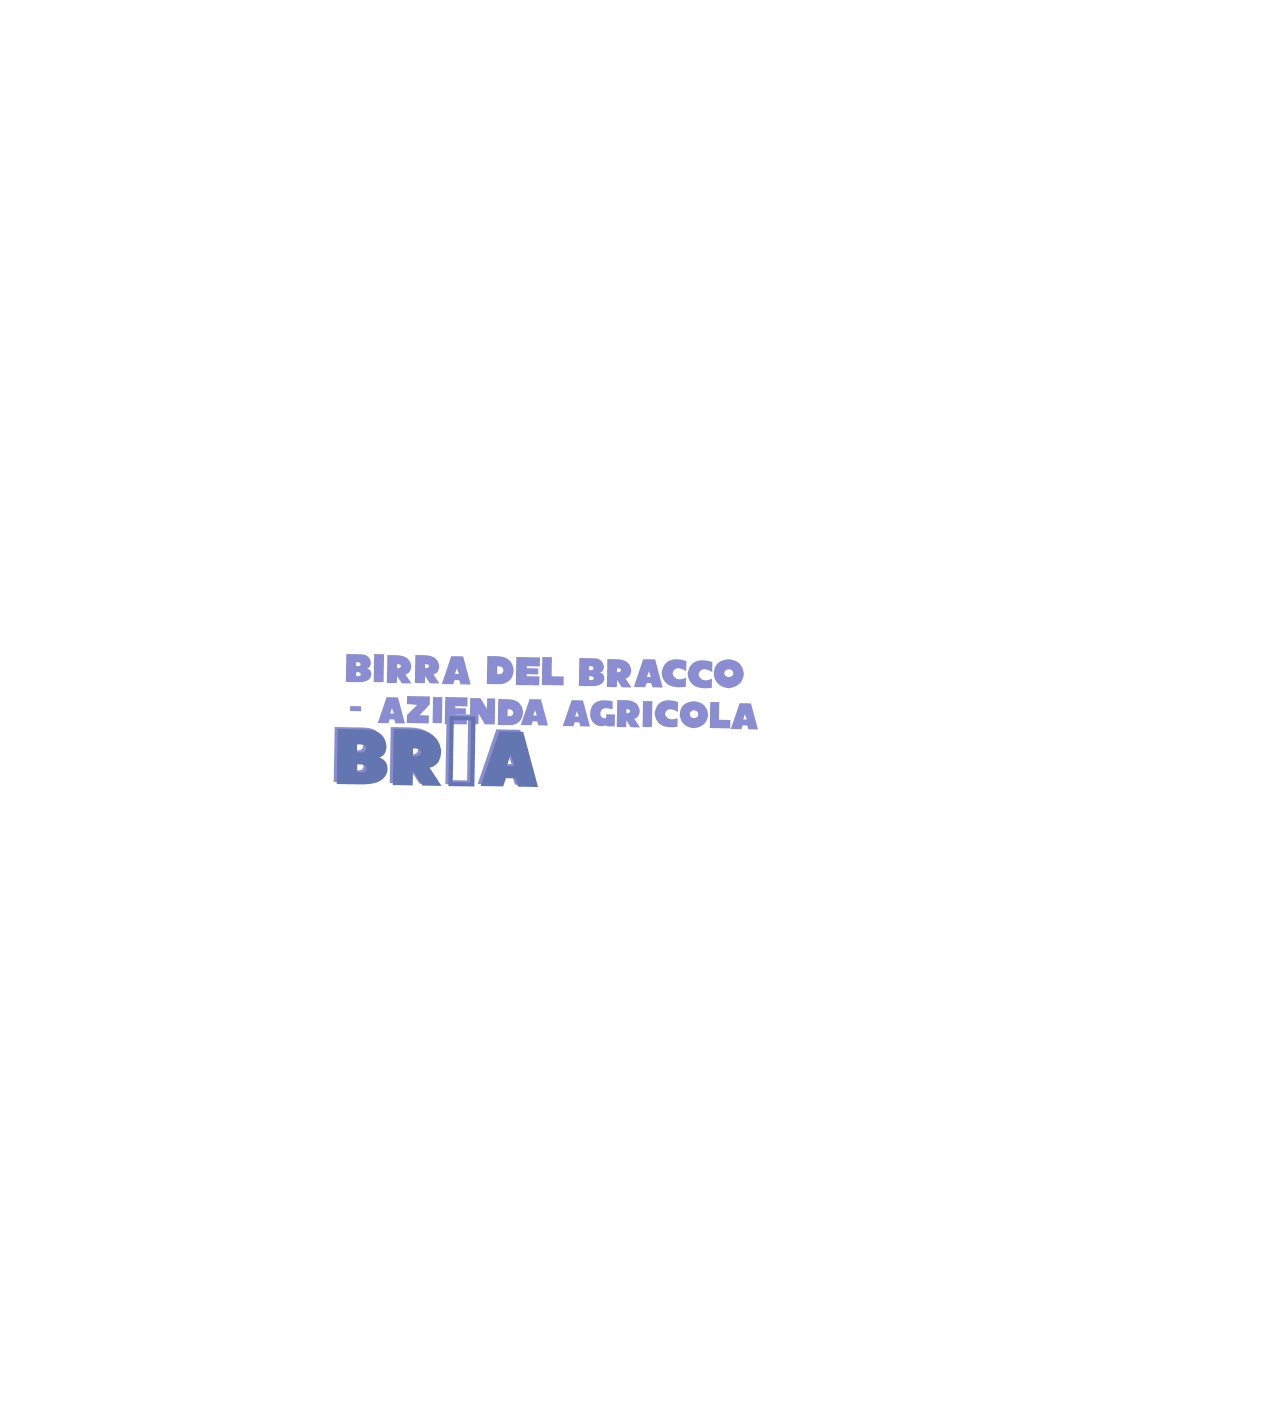 logo Birra del Bracco - Azienda Agricola Bröa